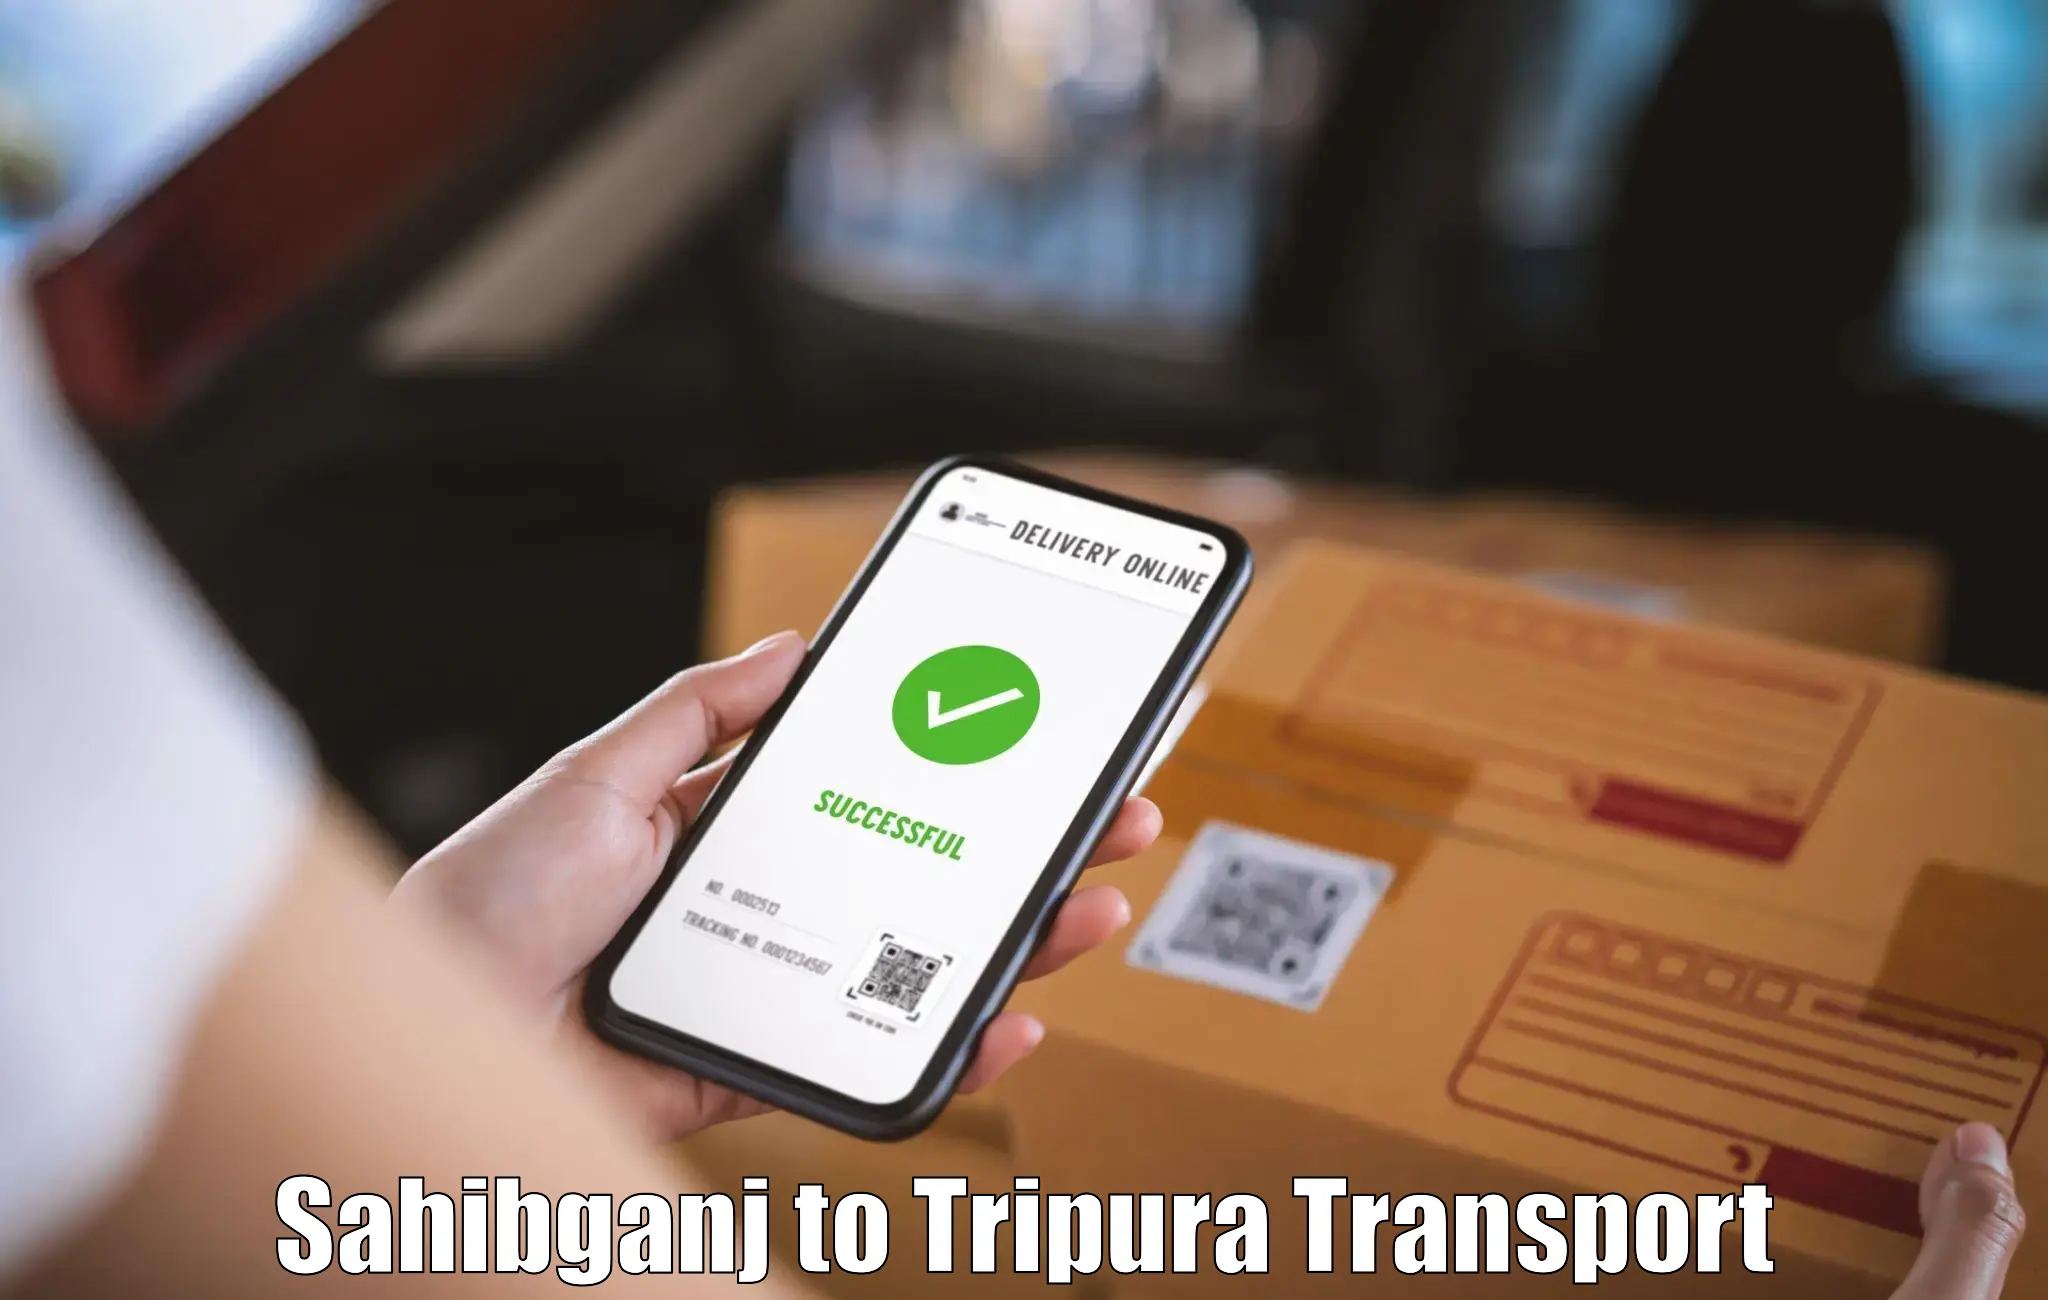 Online transport booking Sahibganj to Manughat